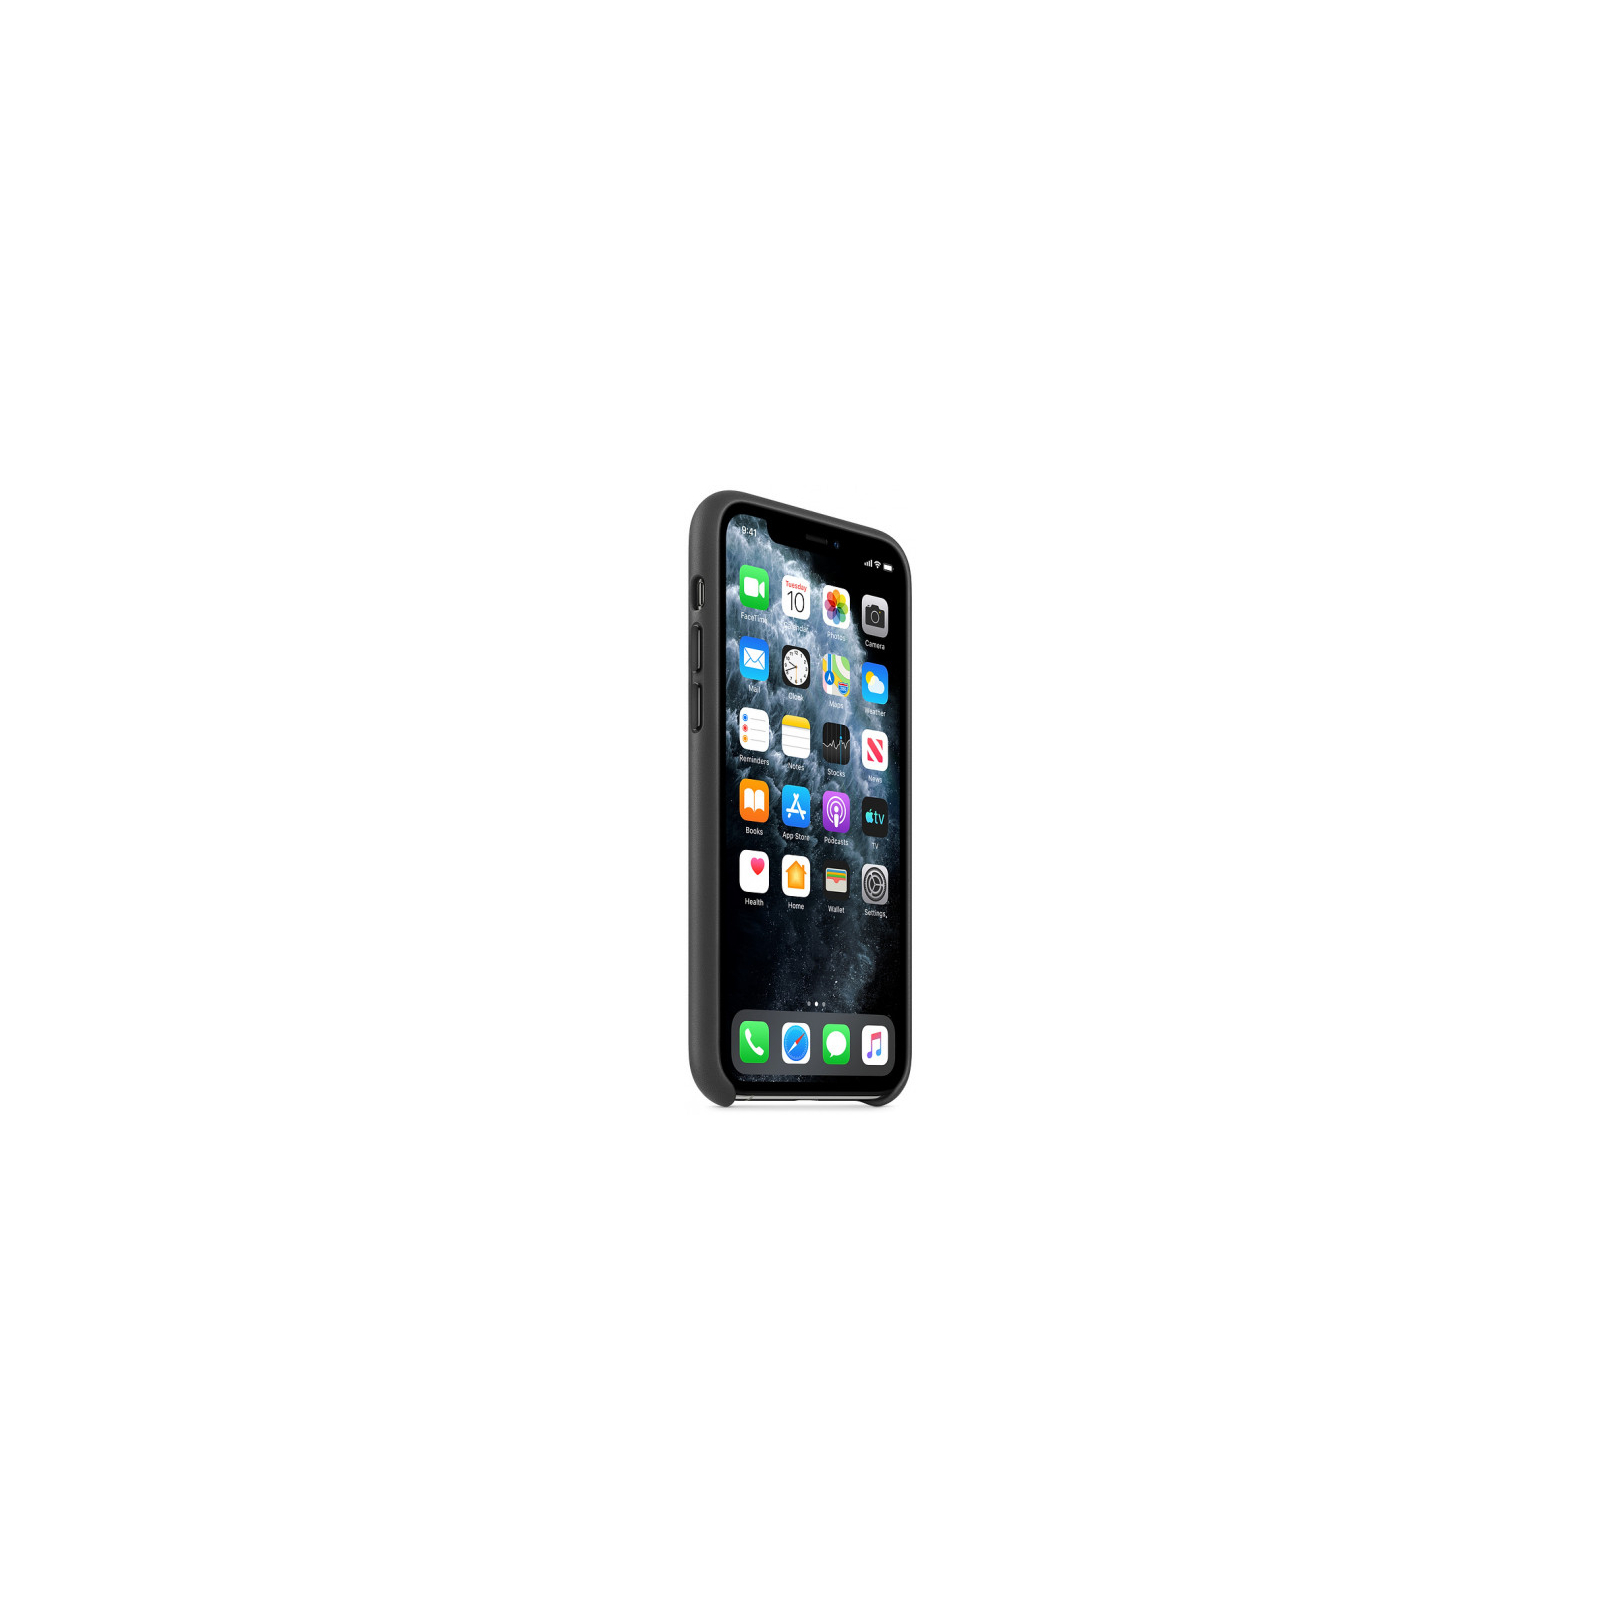 Чехол для мобильного телефона Apple iPhone 11 Pro Leather Case - Black (MWYE2ZM/A) изображение 5